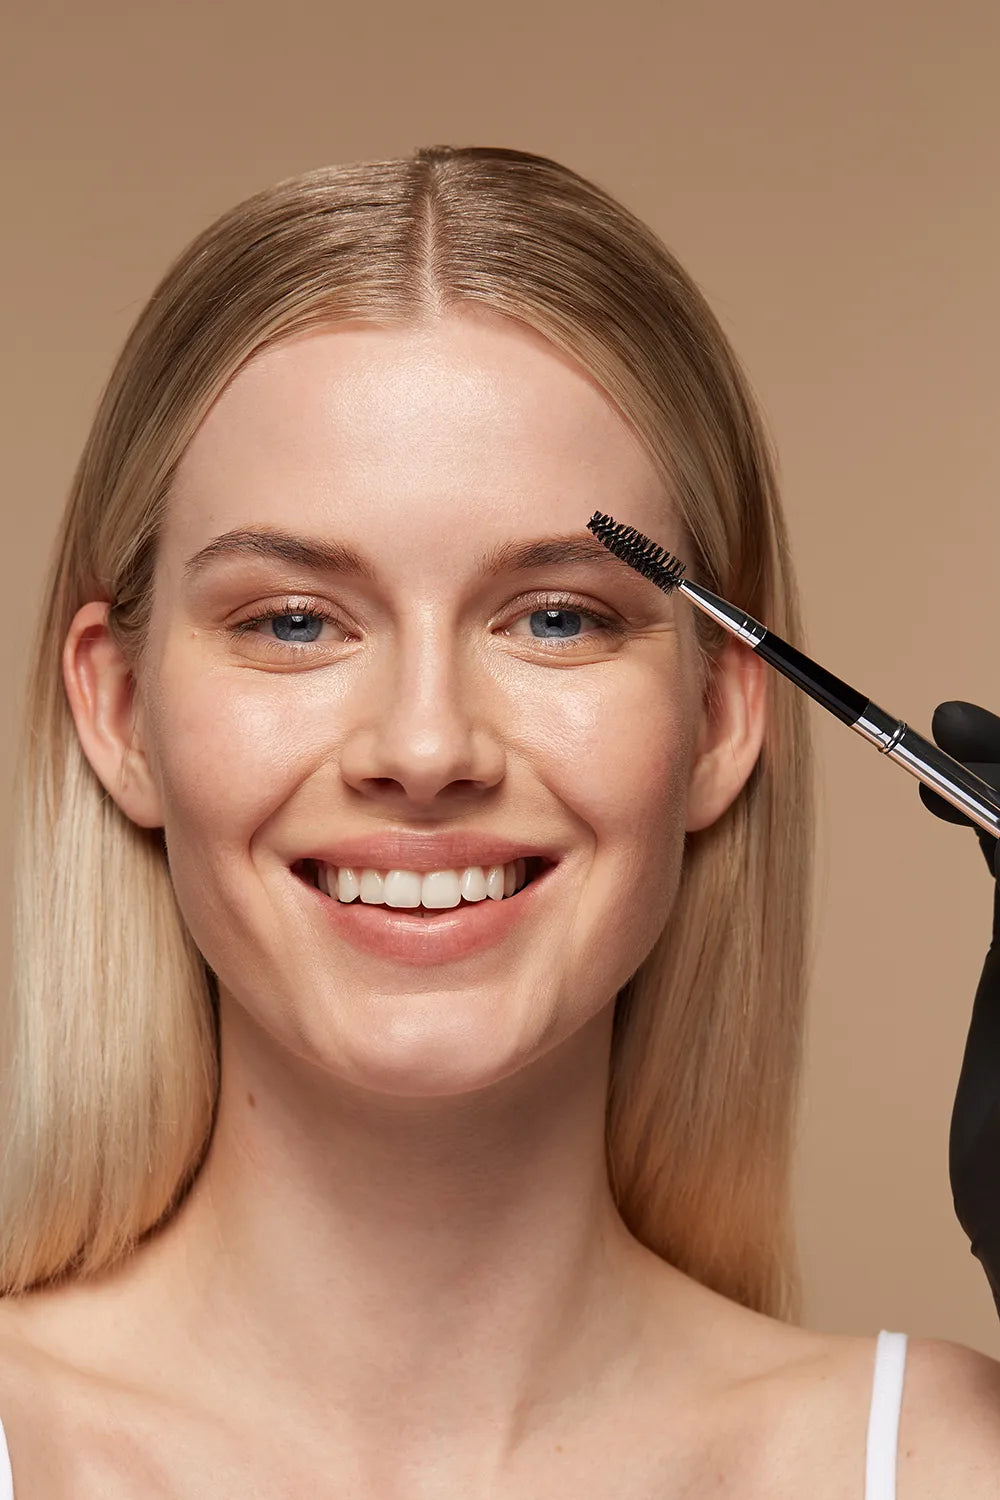 Anwendung eines Browlifts, auch bekannt als Brauenlaminierung, mit einem Bürstchen zur Formung und Hervorhebung der Augenbrauen, dargestellt mit Produkten der Marke Augenmanufaktur